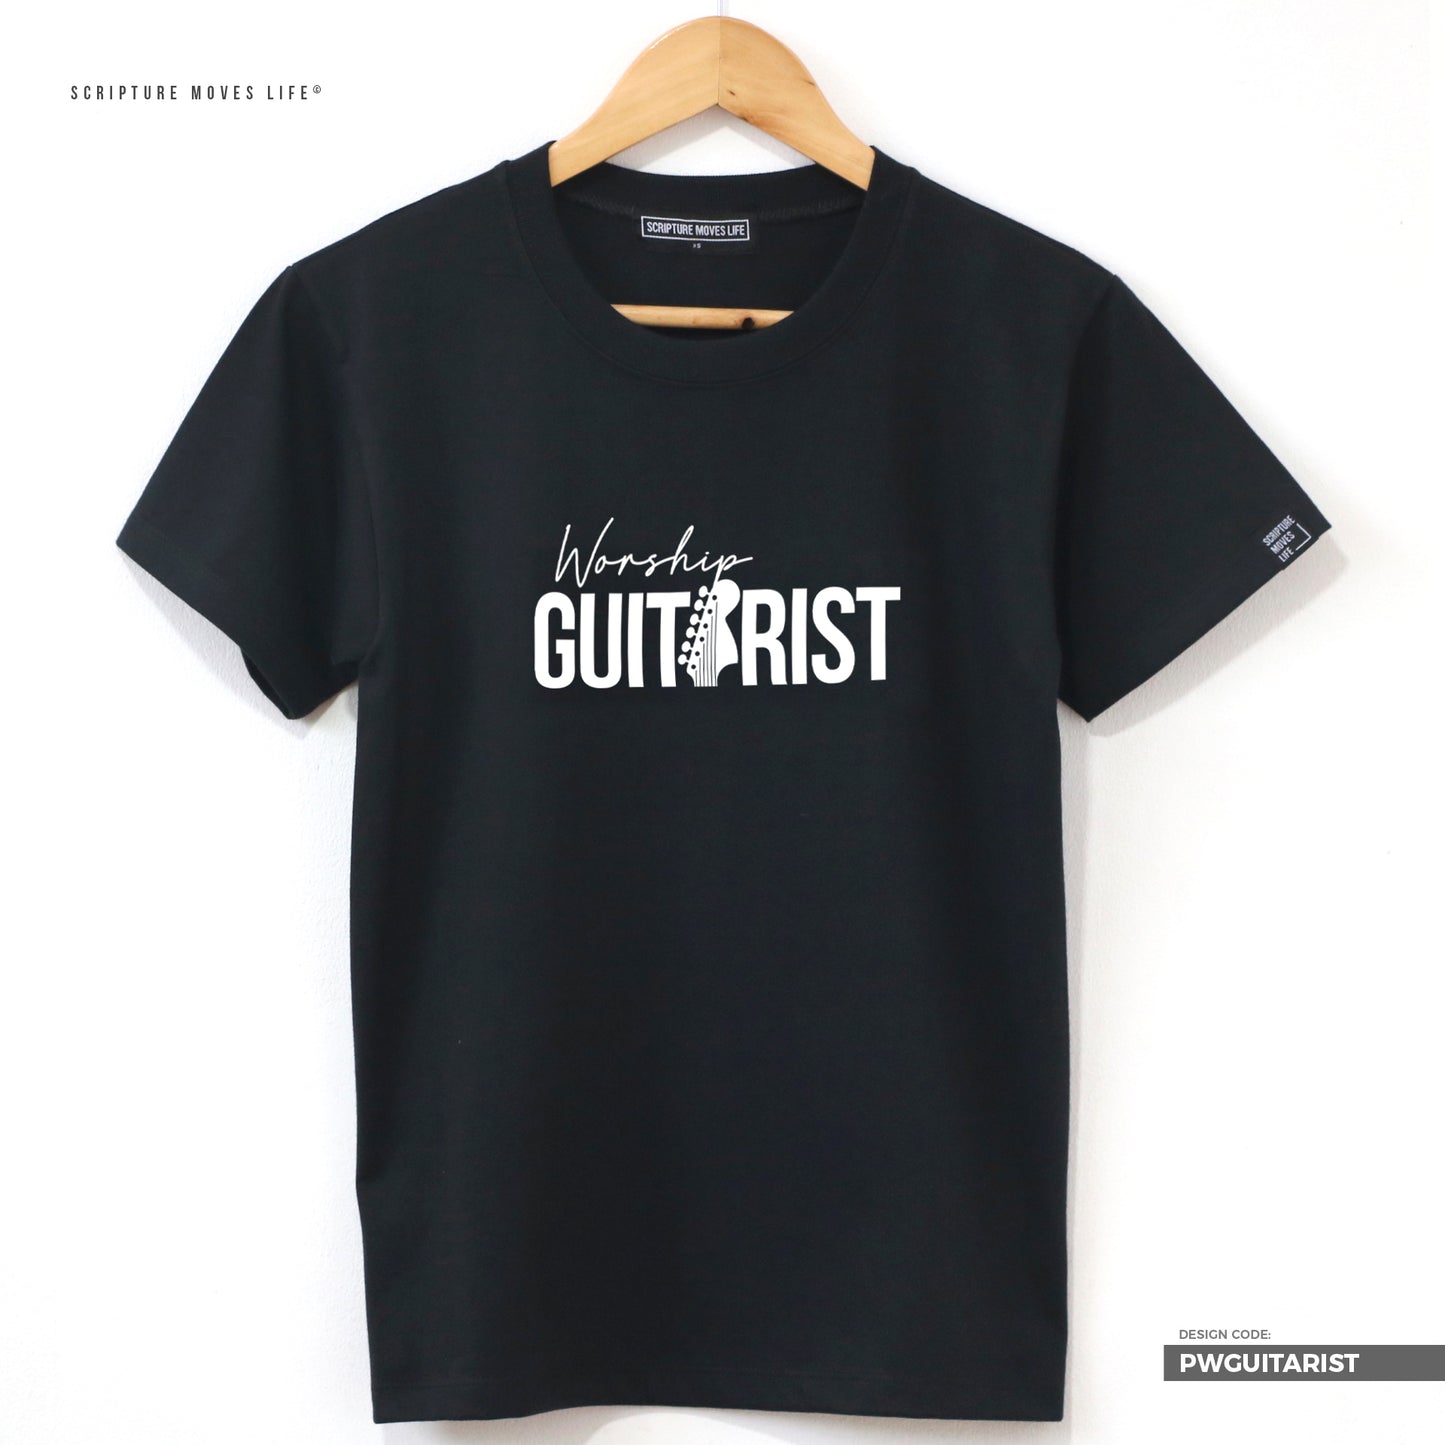 Classic-Worship Team-Guitarist